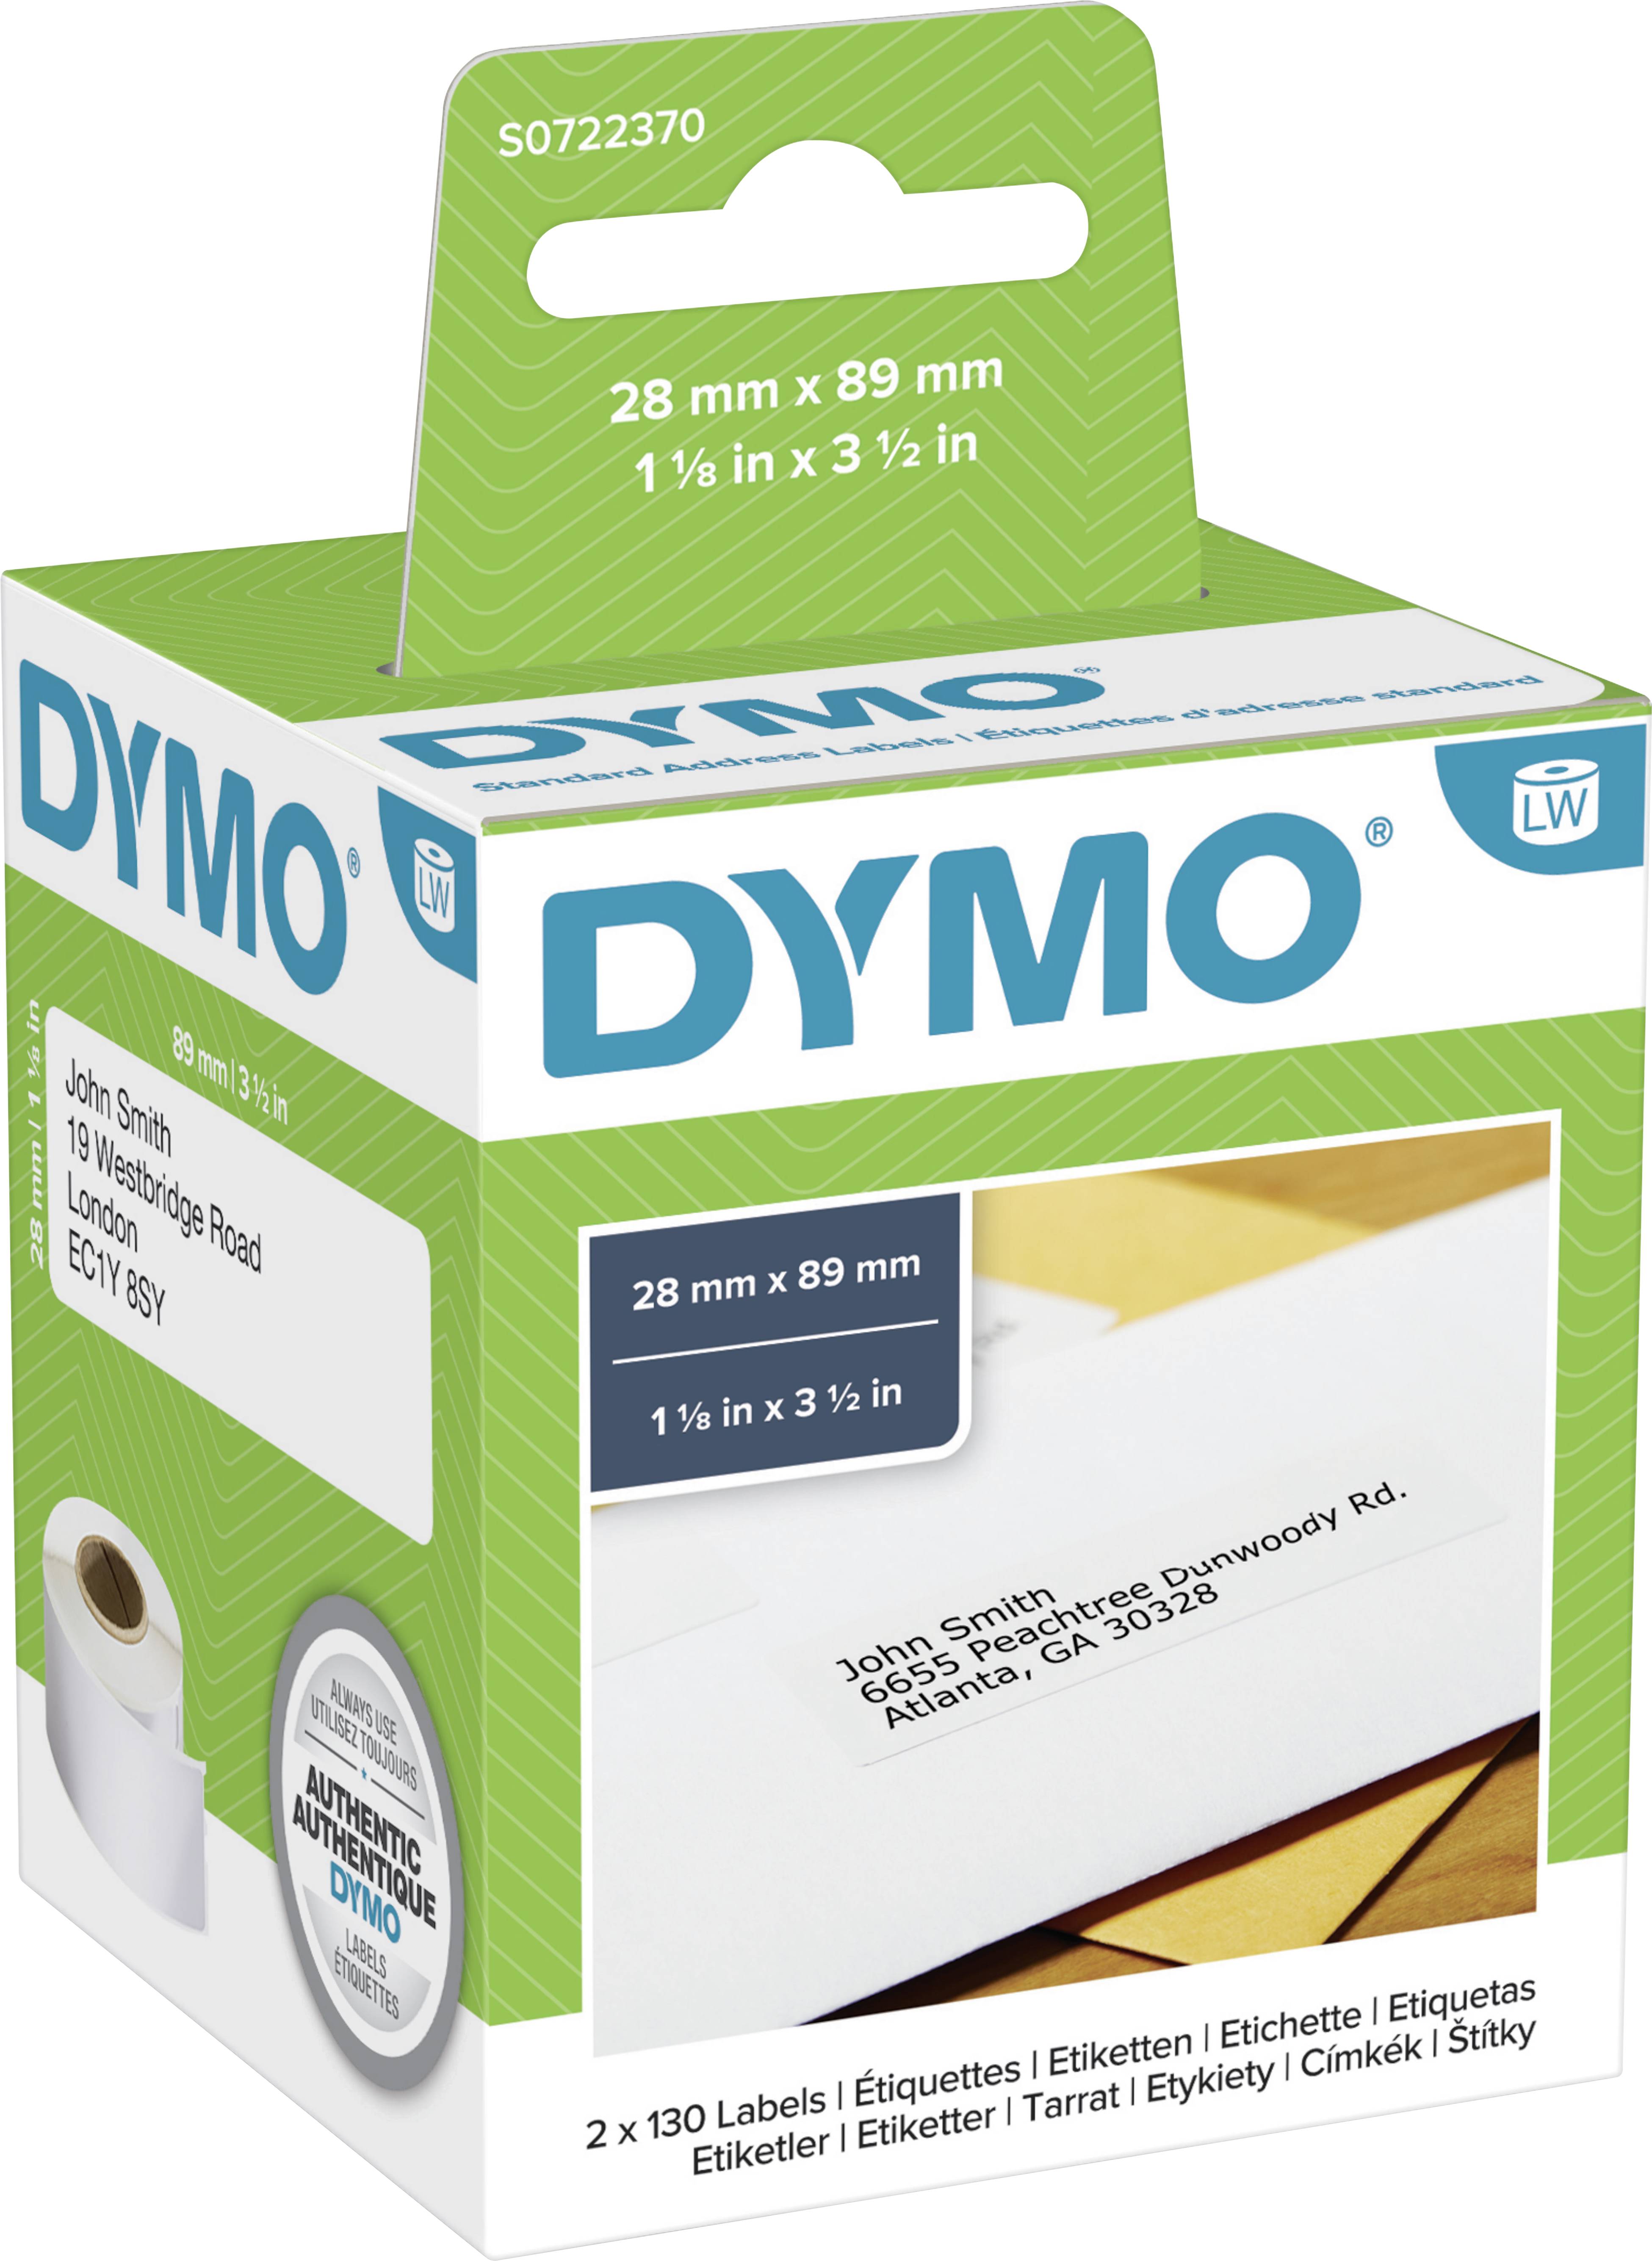 Printing Pleasure 99010 Rolle Adress-Etiketten kompatibel für Dymo LabelWriter & Seiko Etikettendrucker 28mm x 89mm 130 Stück